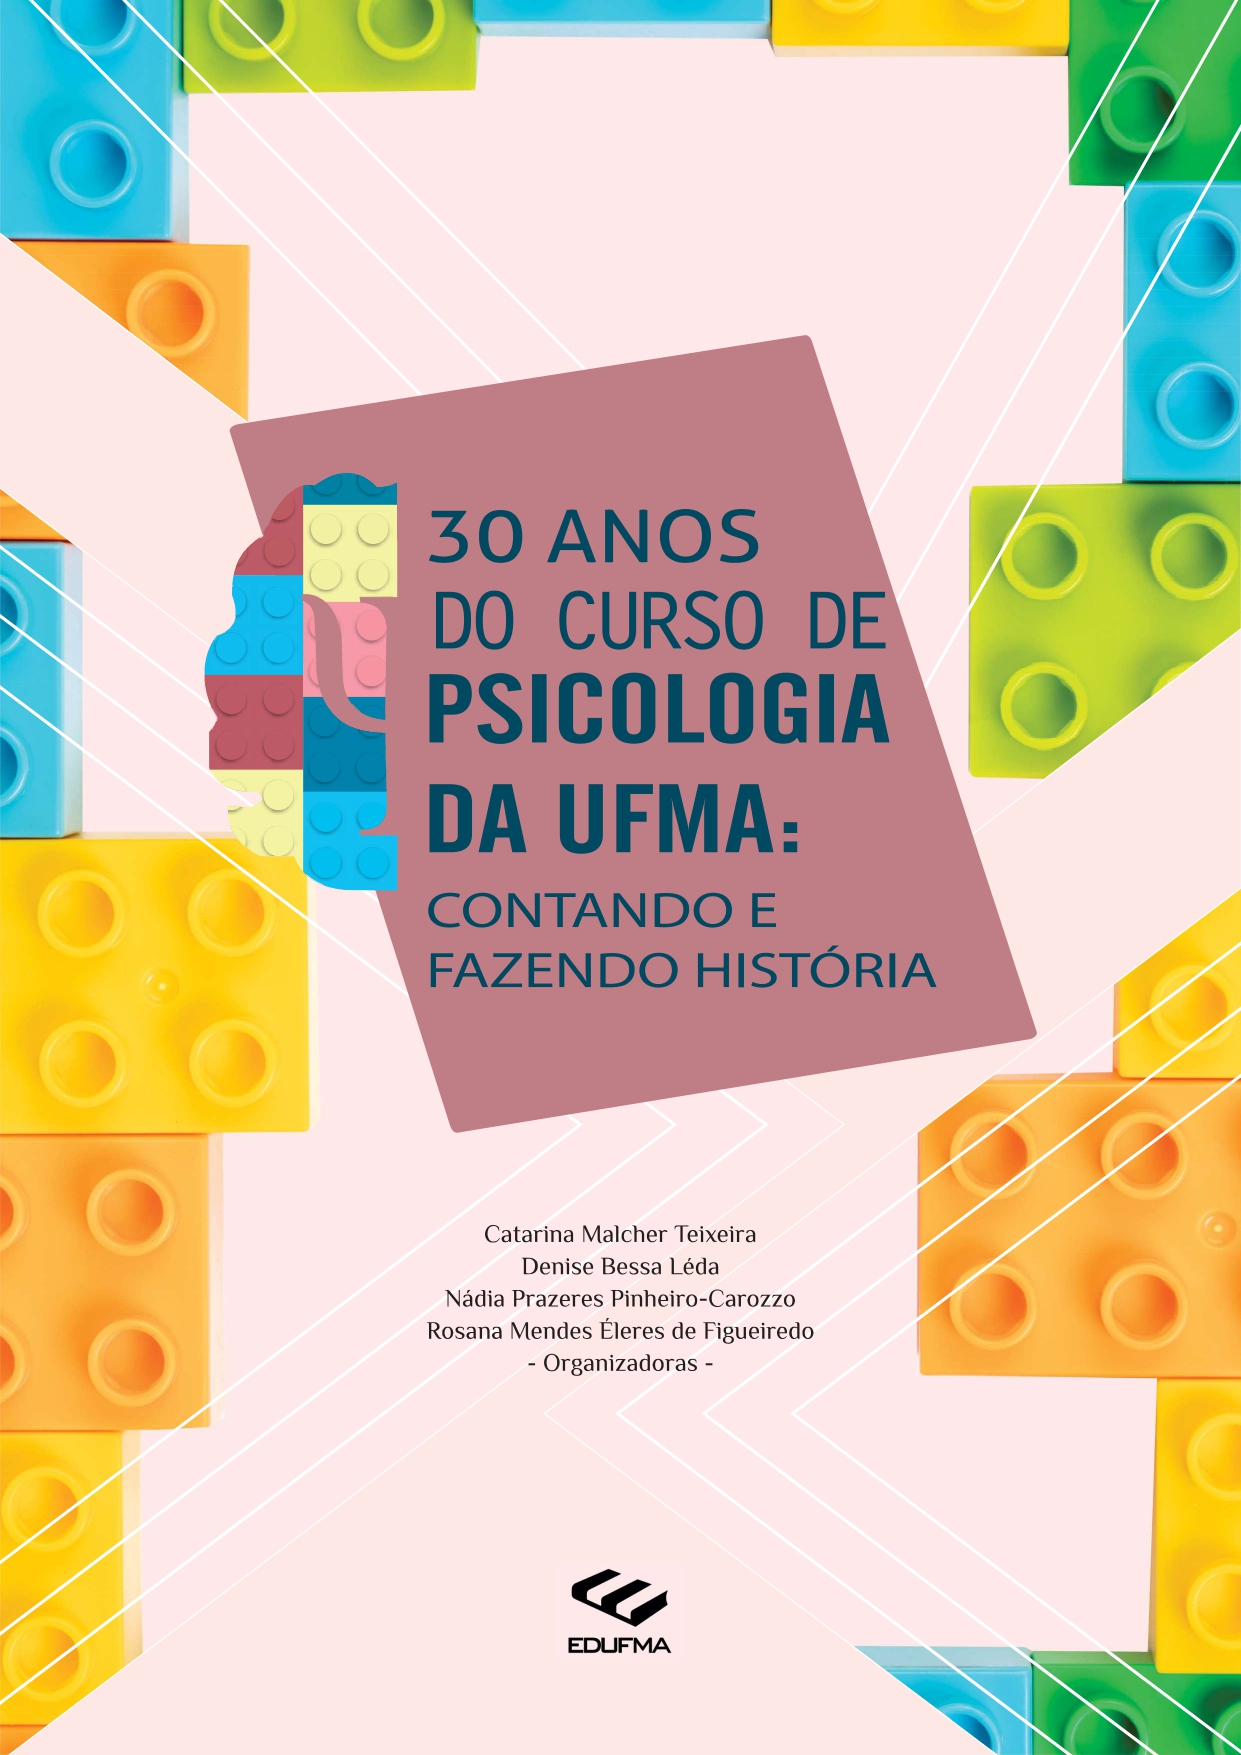 30 anos do curso de Psicologia da UFMA: contando e fazendo história